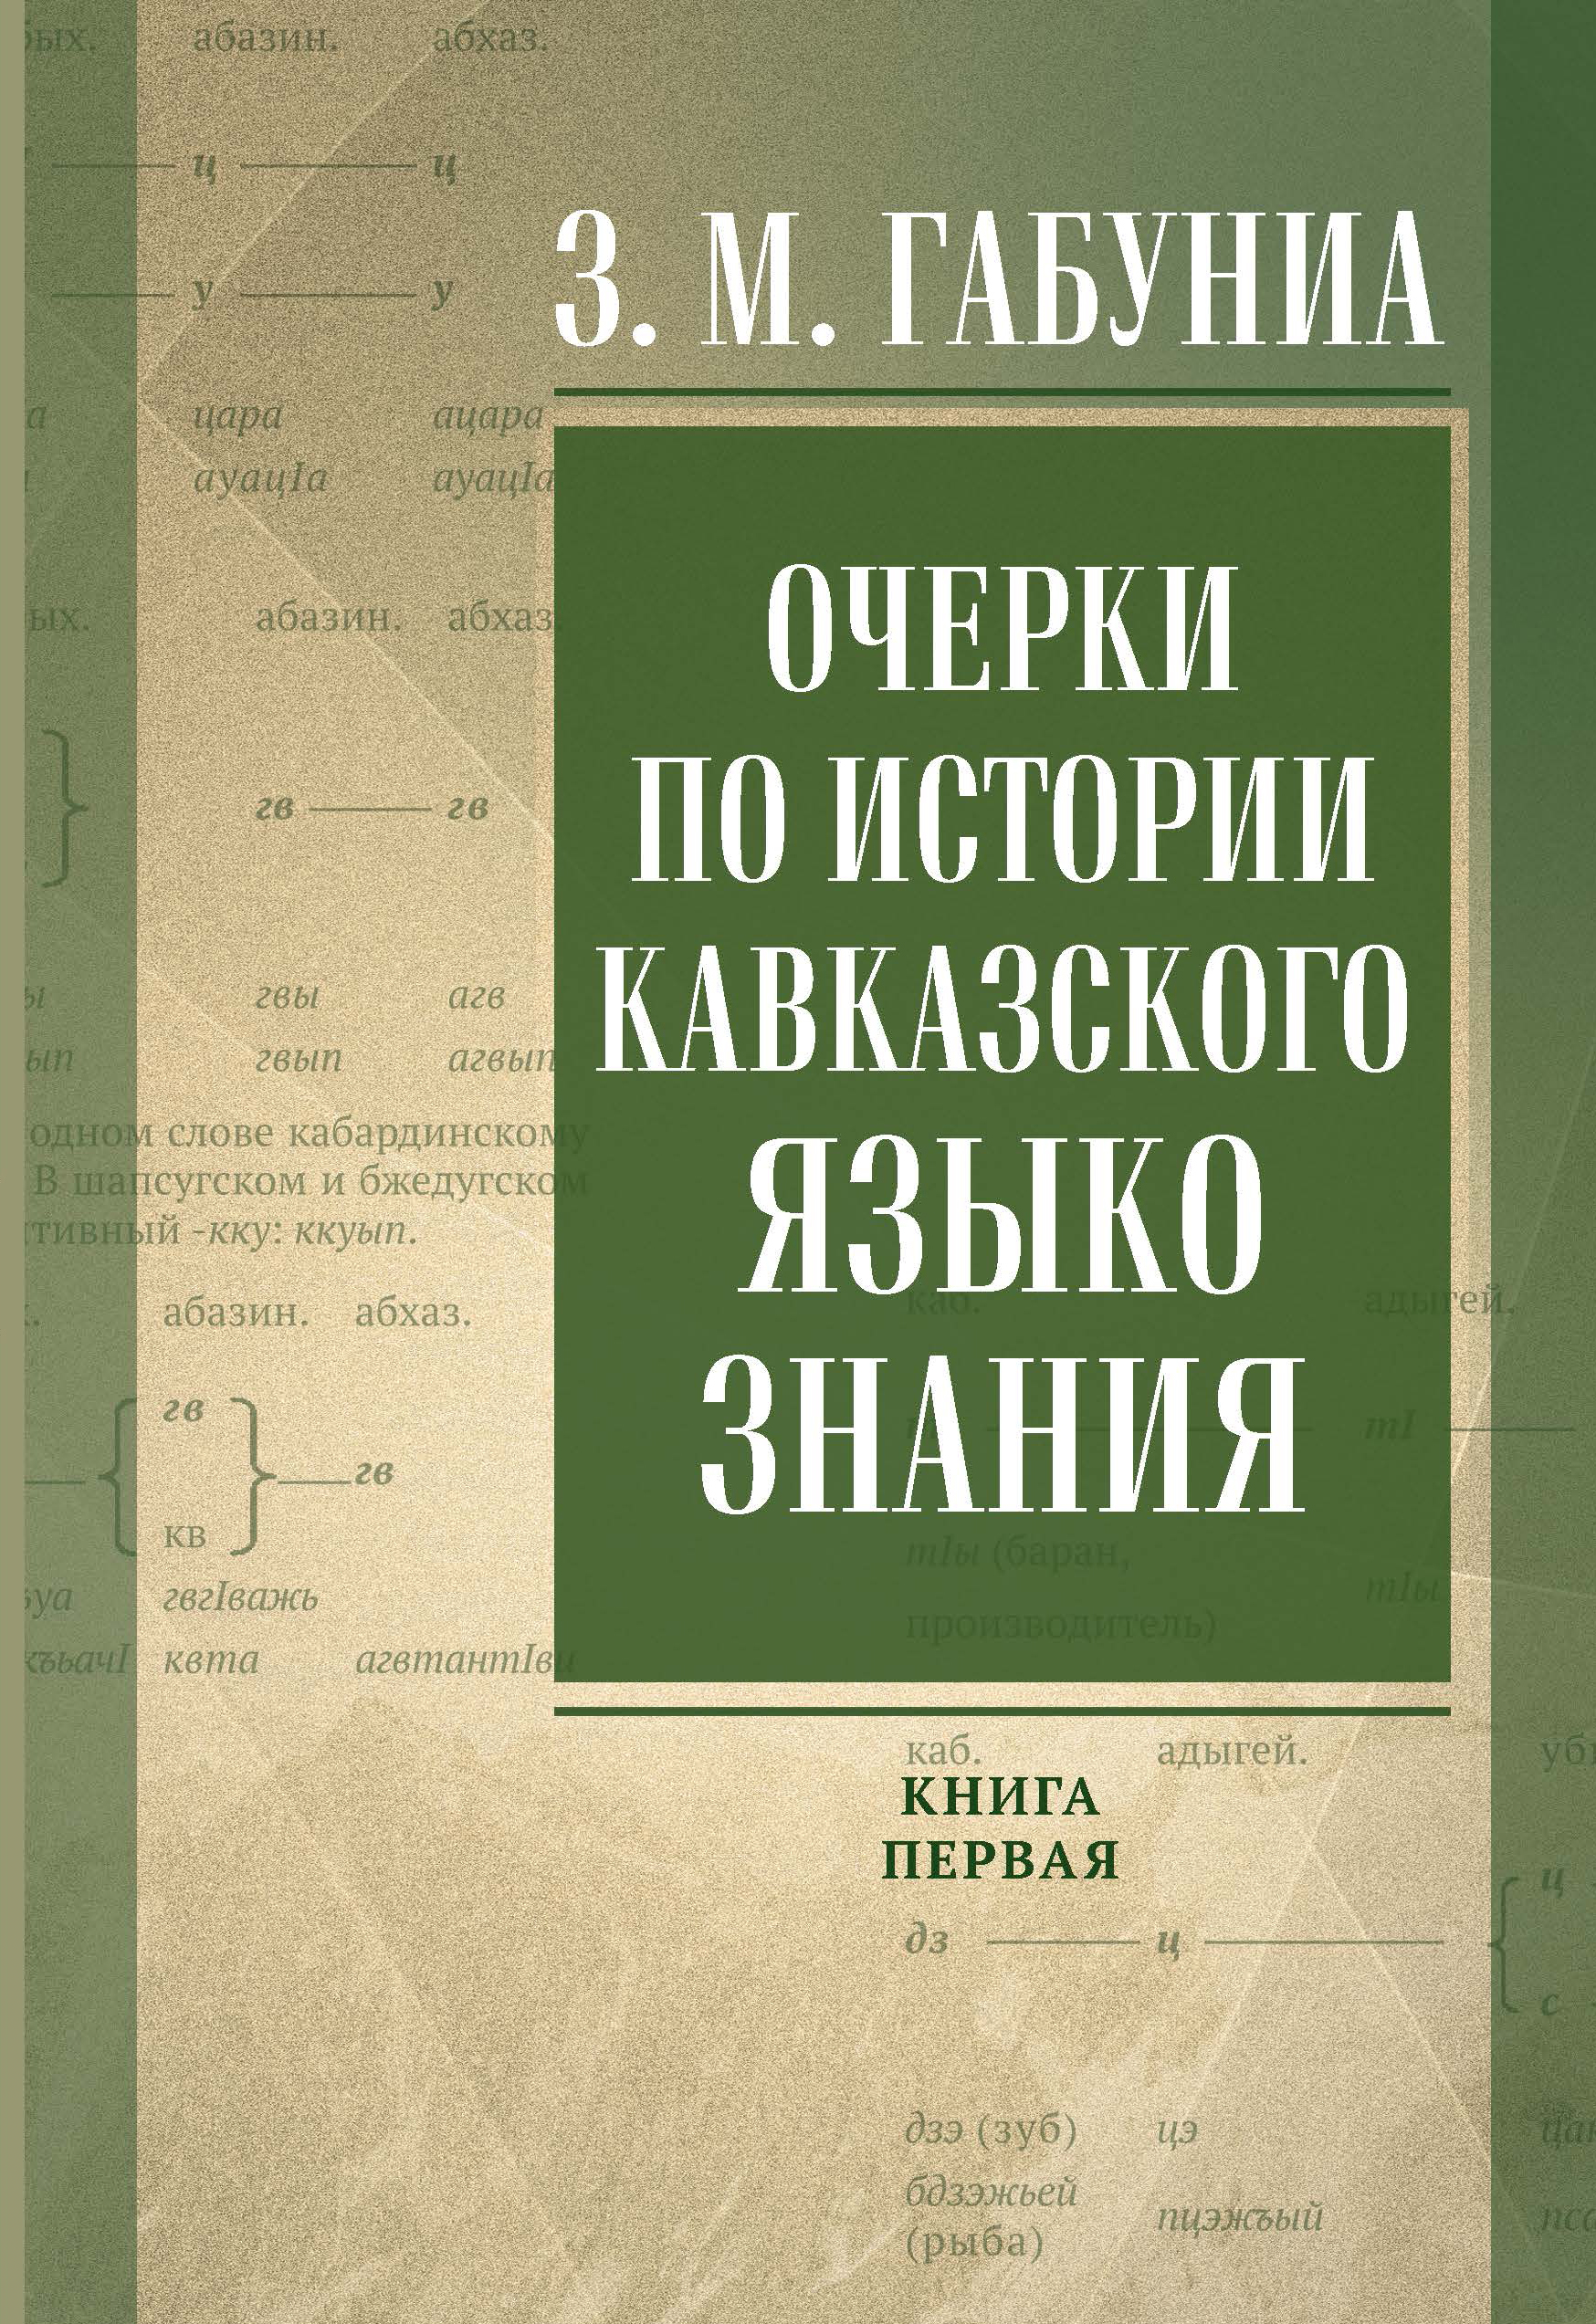 В Нальчике вышла книга по истории кавказского языкознания